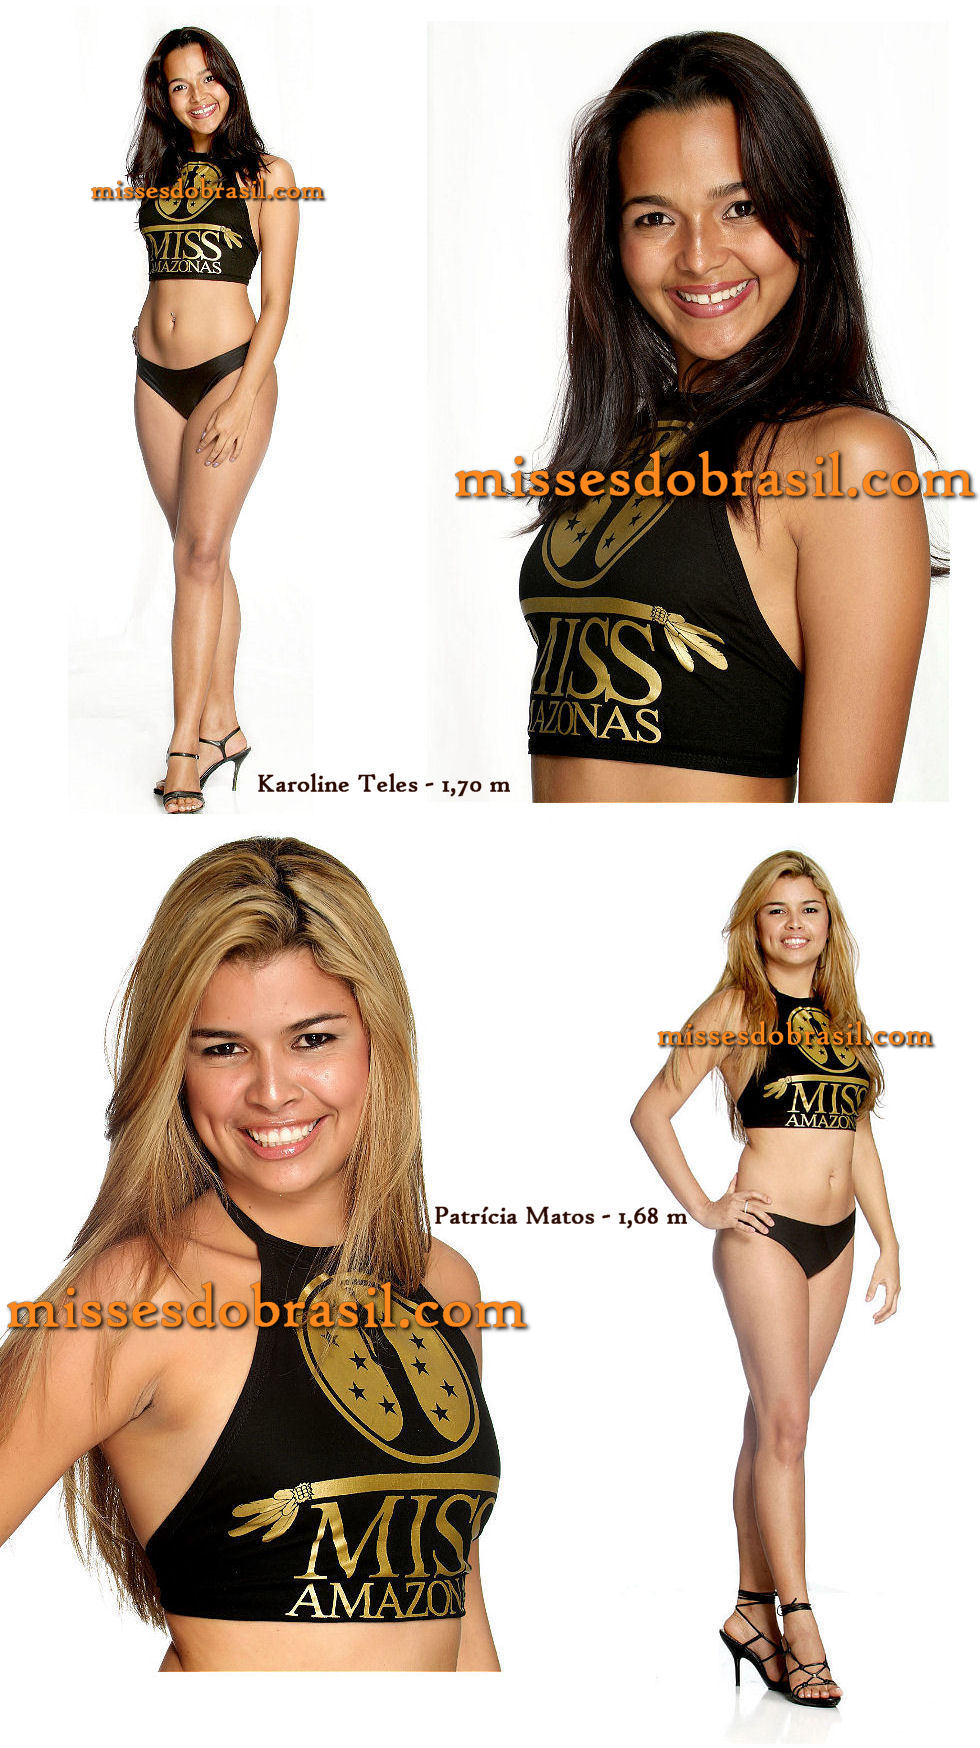 Miss Amazonas 2006